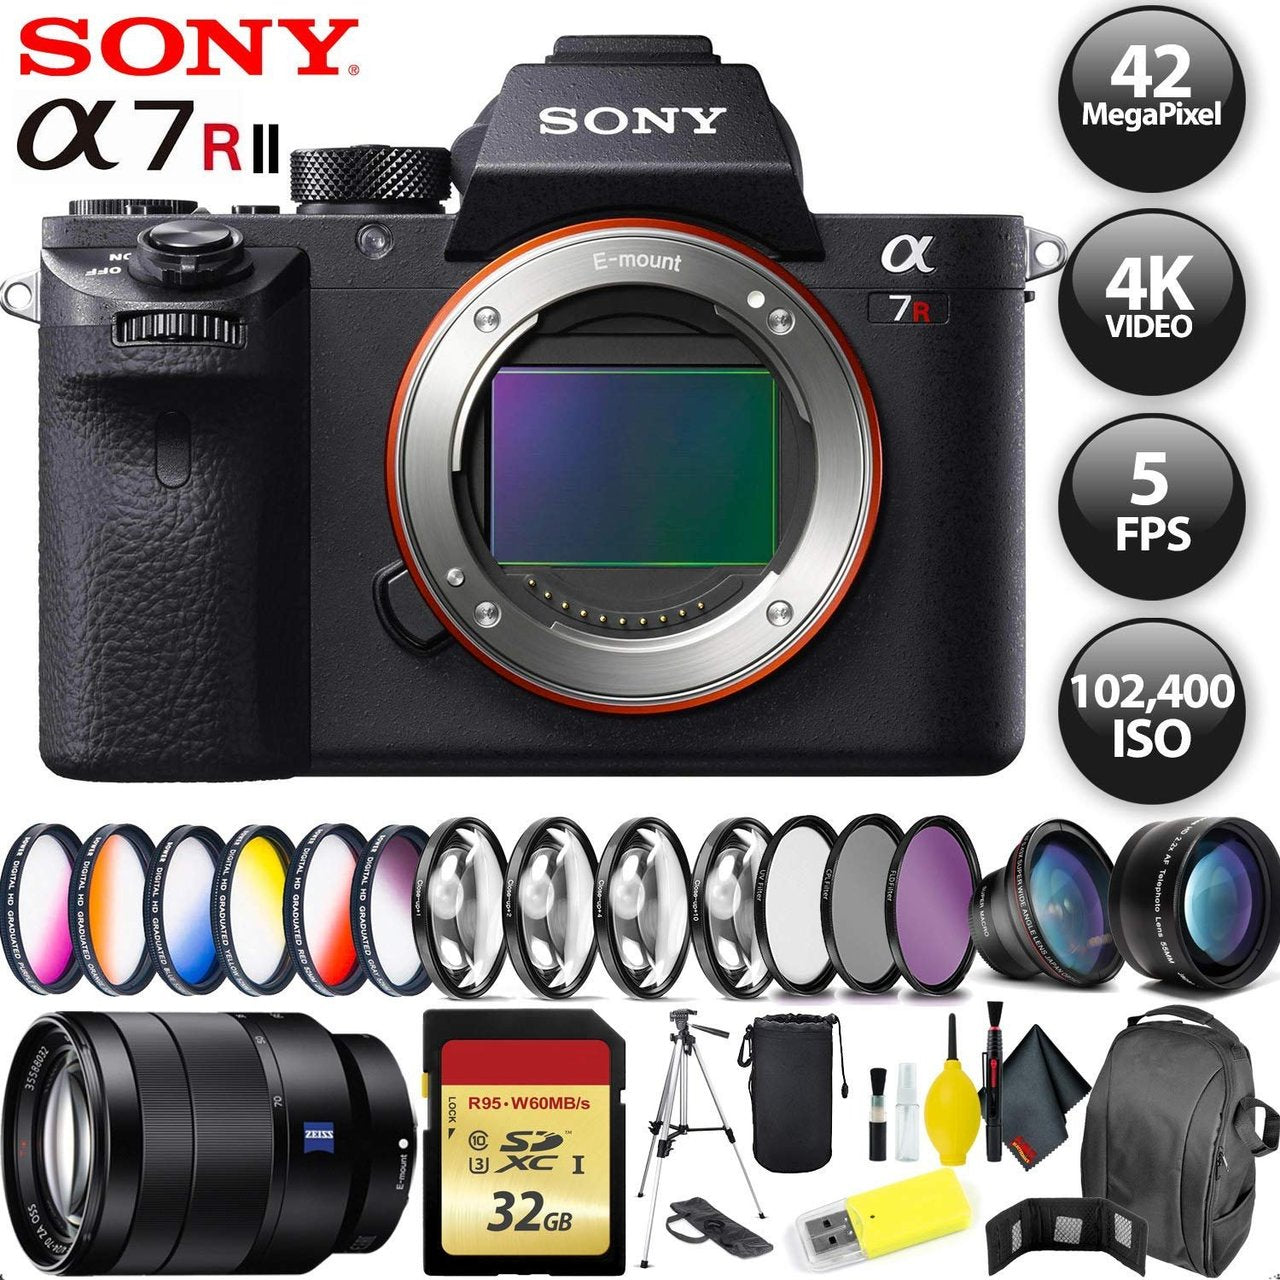 Sony Alpha a7R II Mirrorless Digital Camera + 256GB Memory Card + Sony FE 70-200mm Lens